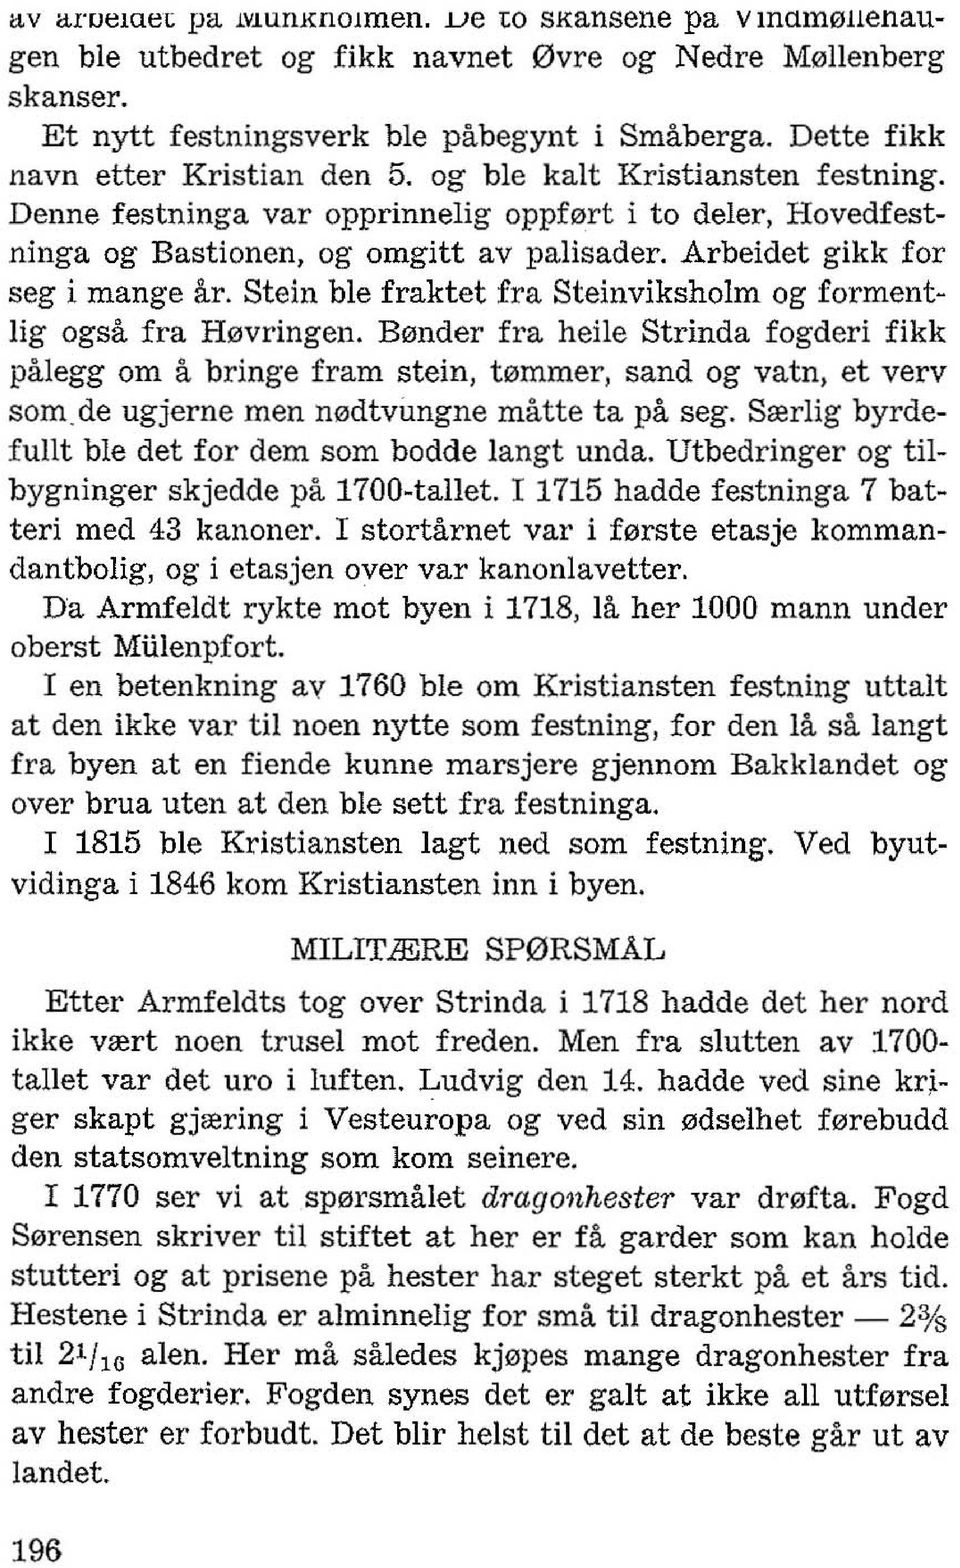 Arbeidet gikk for seg i mange ar. Stein ble fraktet fra Steinviksholm og forment Jig ogsa fra H0vringen.